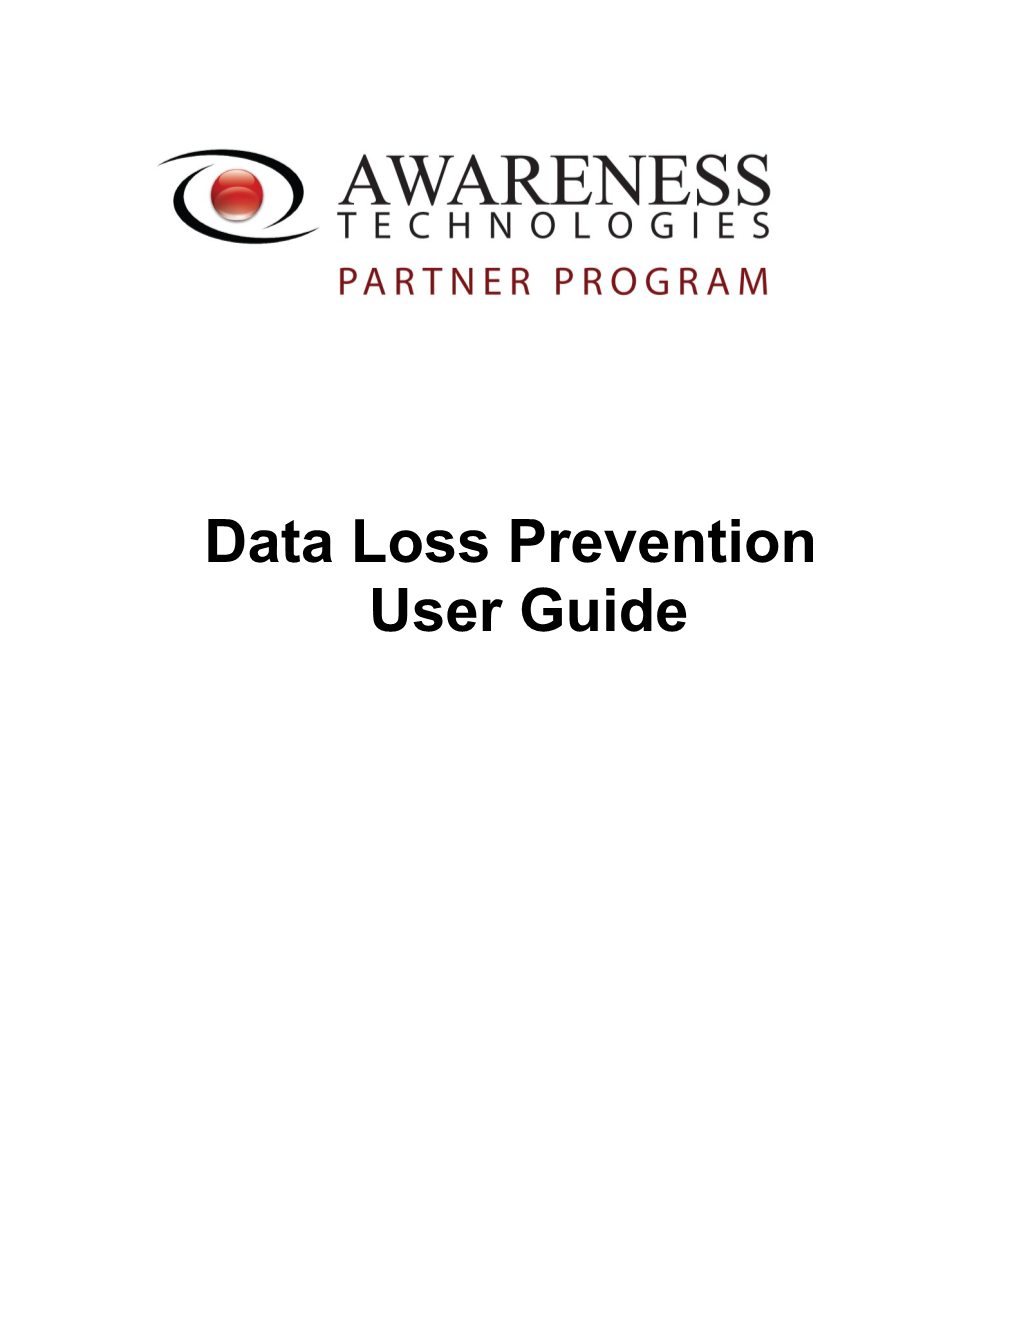 Data Loss Preventionuser Guide